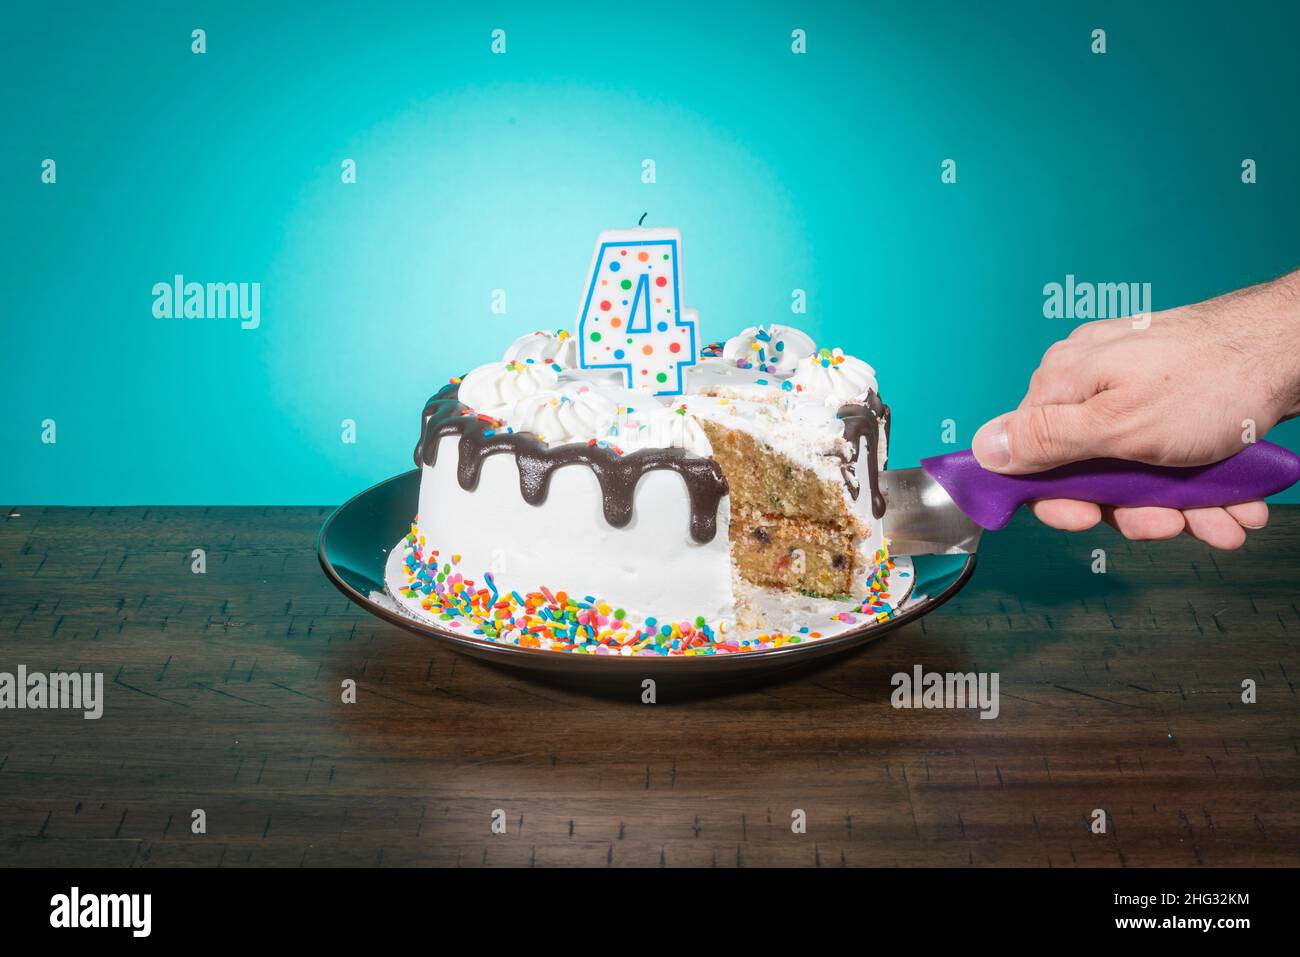 Un gâteau d'anniversaire, manquant une tranche, porte une bougie en forme de numéro 4 tandis qu'une main coupe une autre tranche. Banque D'Images